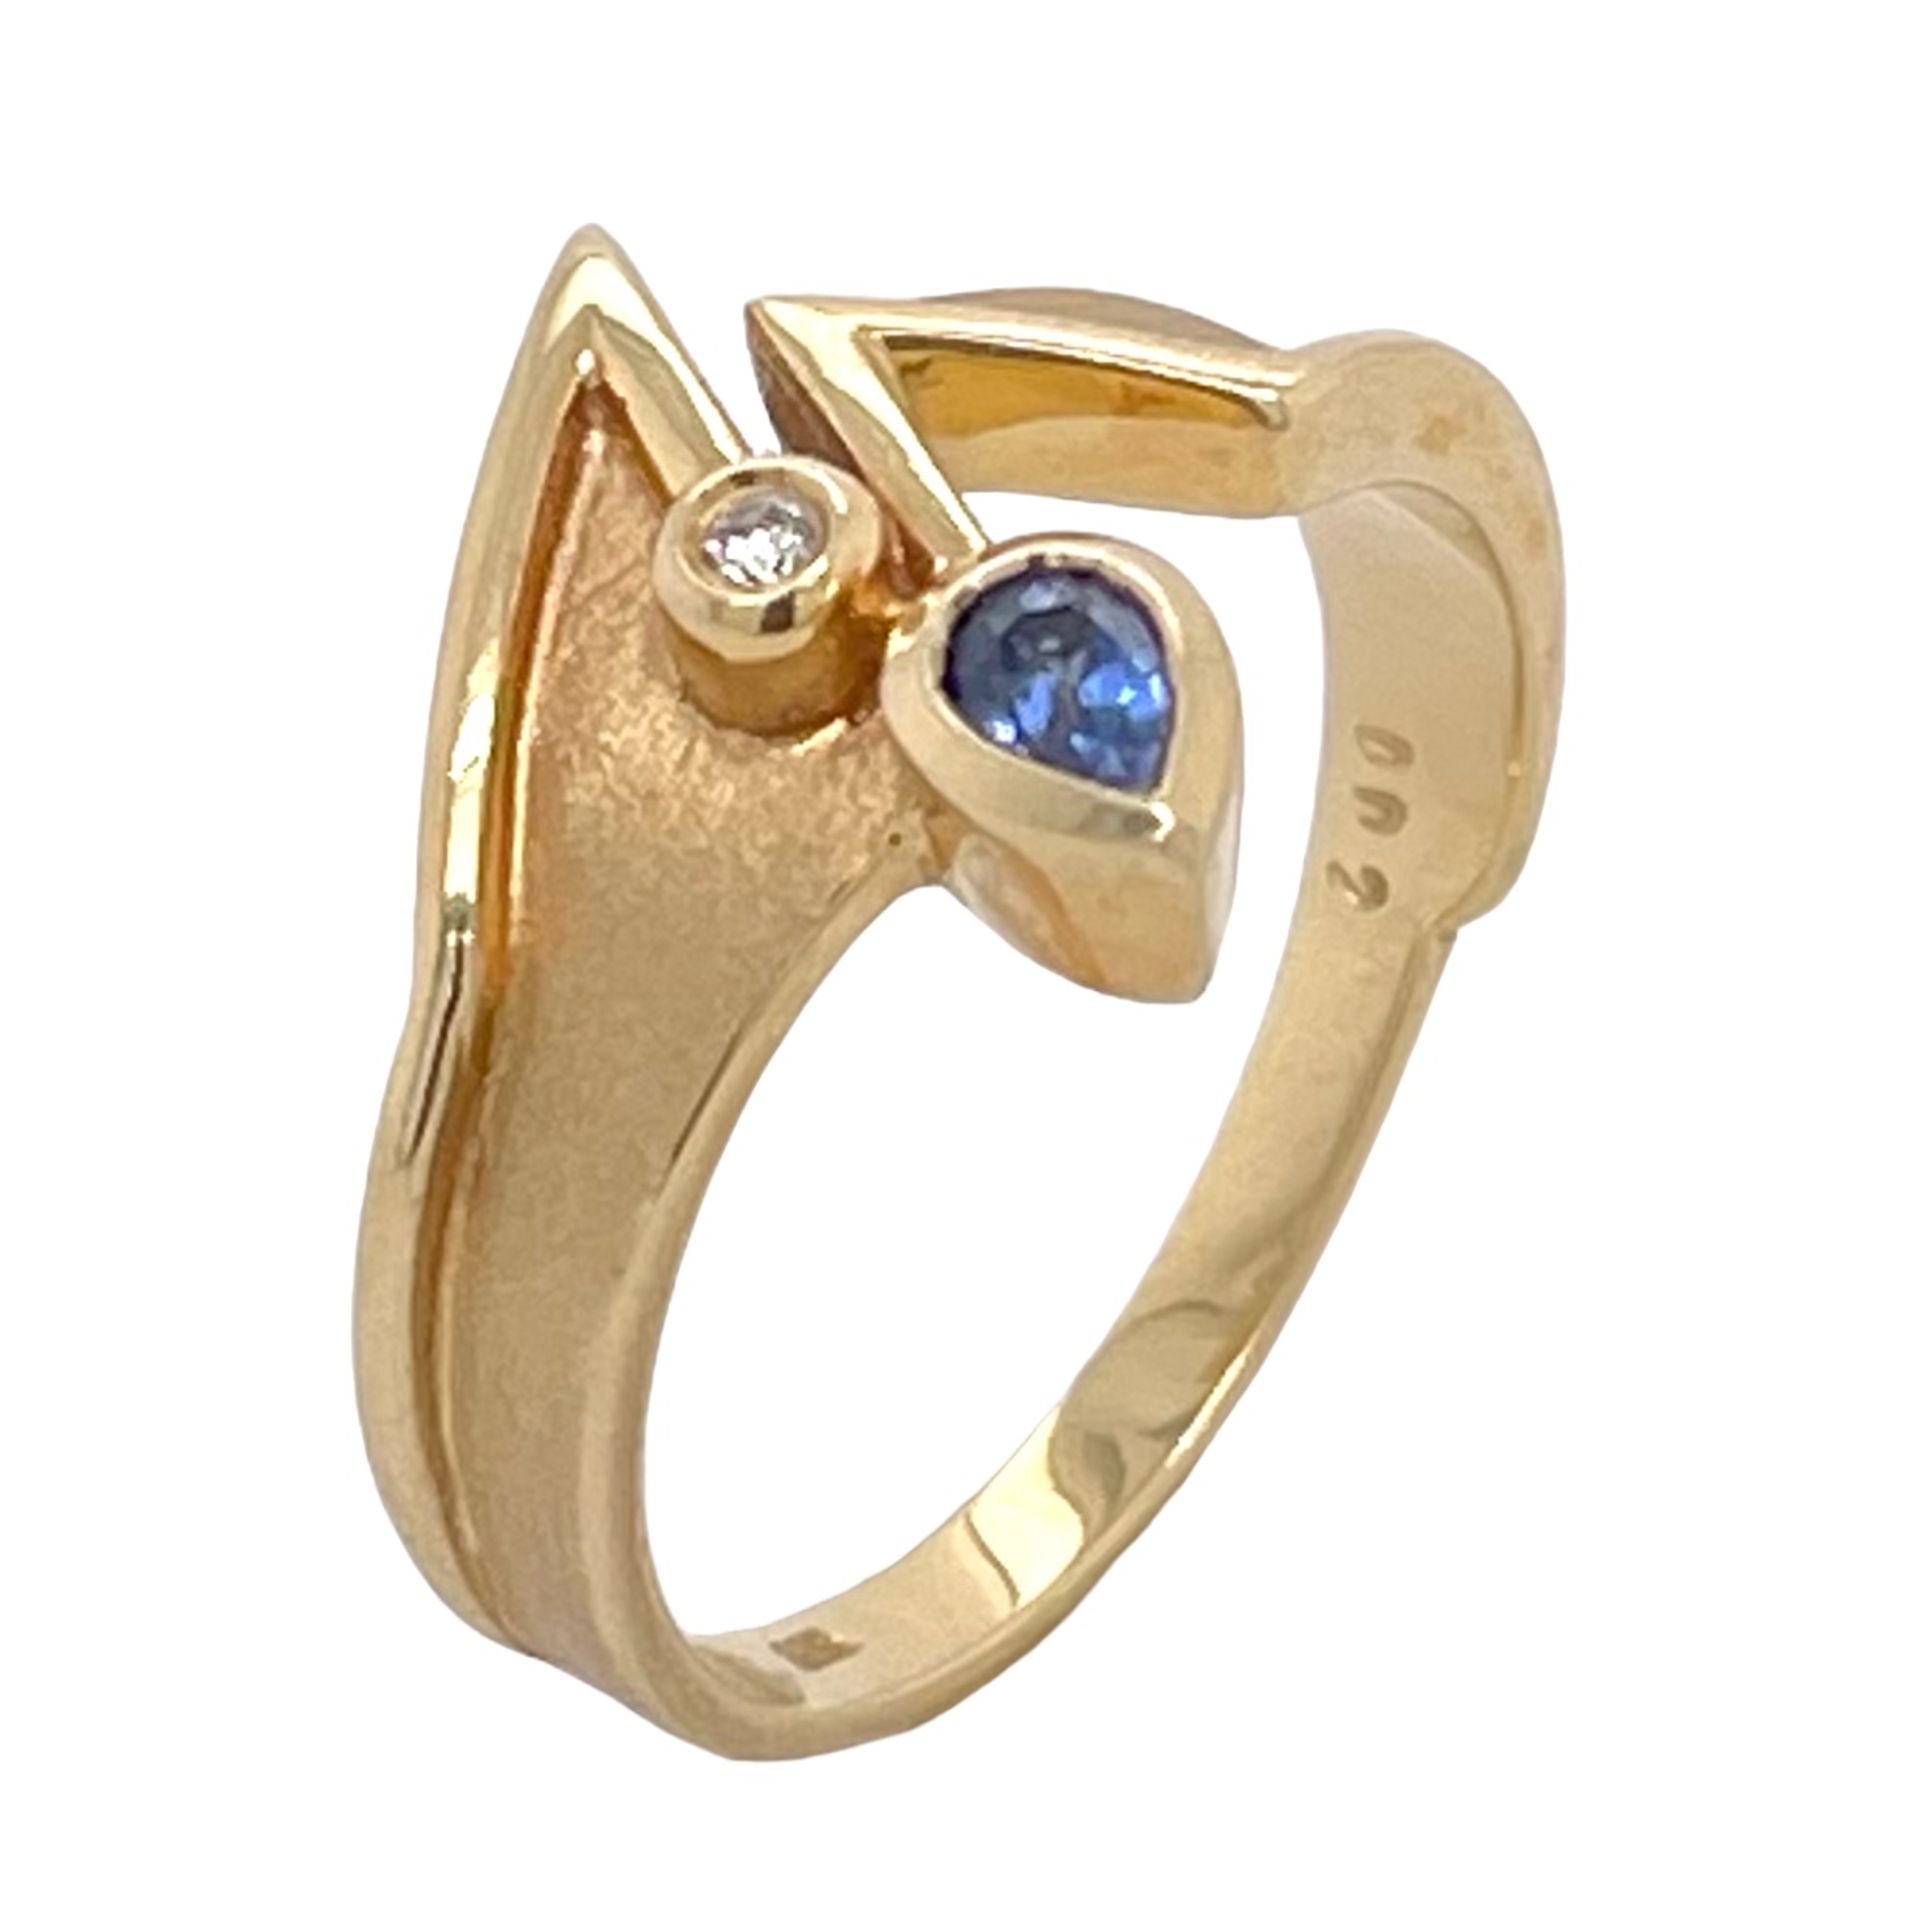 Ring 3,79g 585/- Gelbgold mit Diamant ca. 0,02 ct. und Saphir, Ringgröße ca. 54